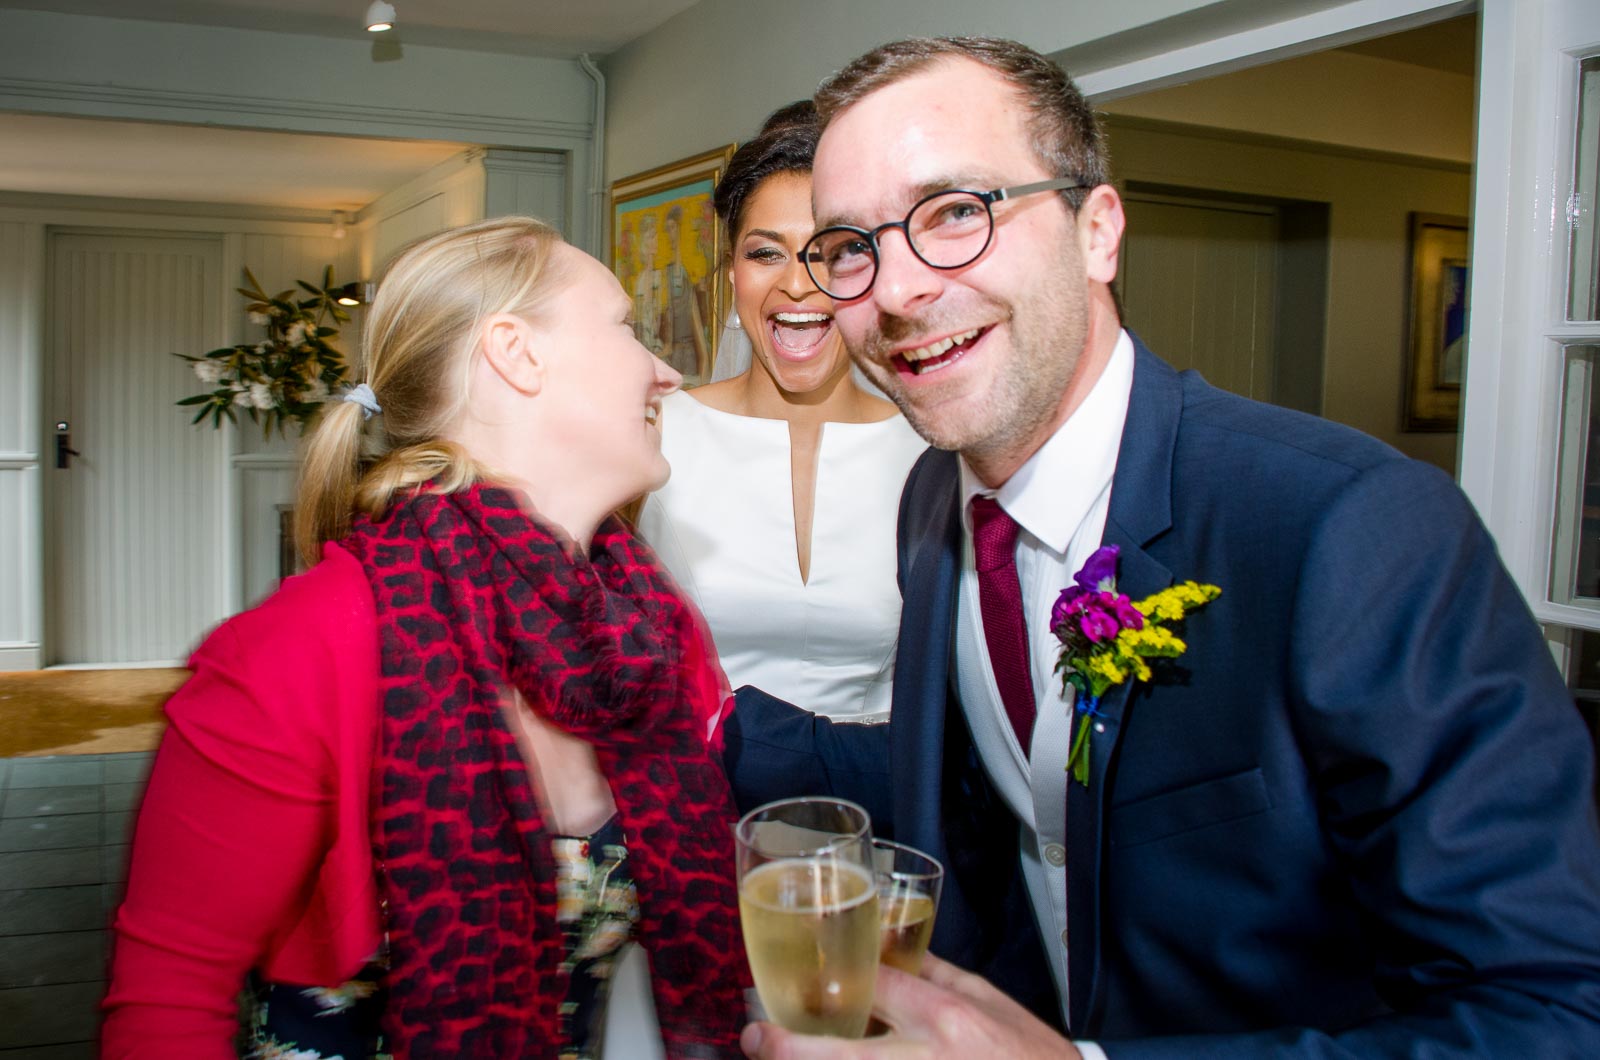 Raf, Tash and a wedding guest laugh during their wedding reception in Borde Hill, Haywards Heath.